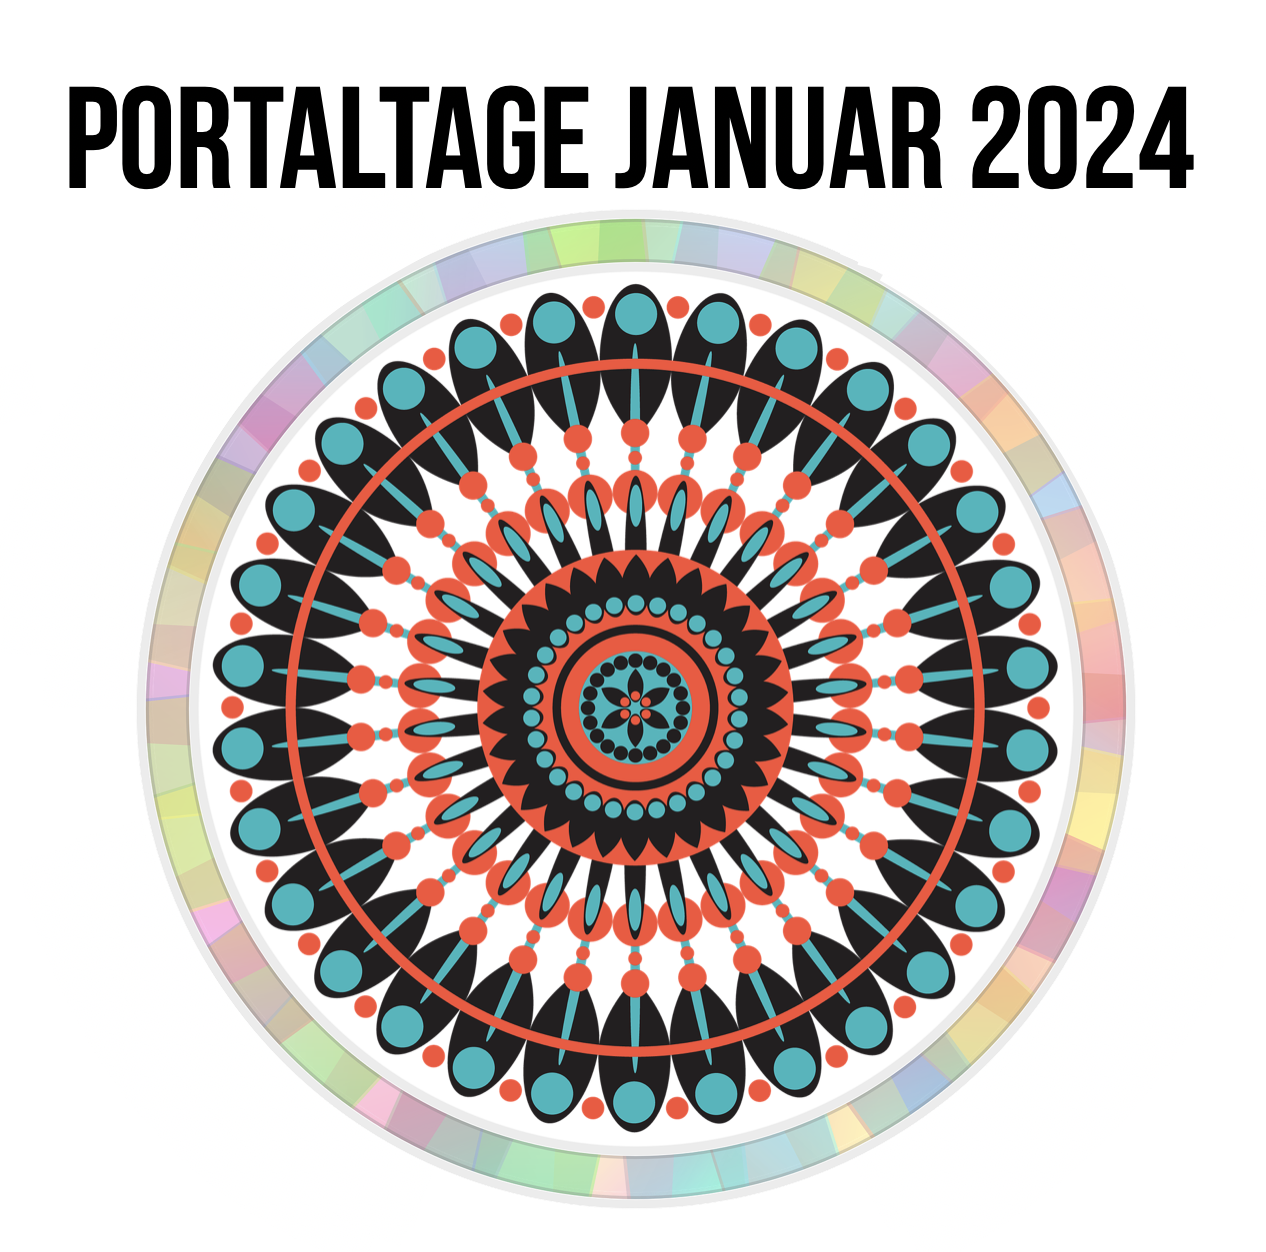 Portaltage im Januar und Ausblick 2024